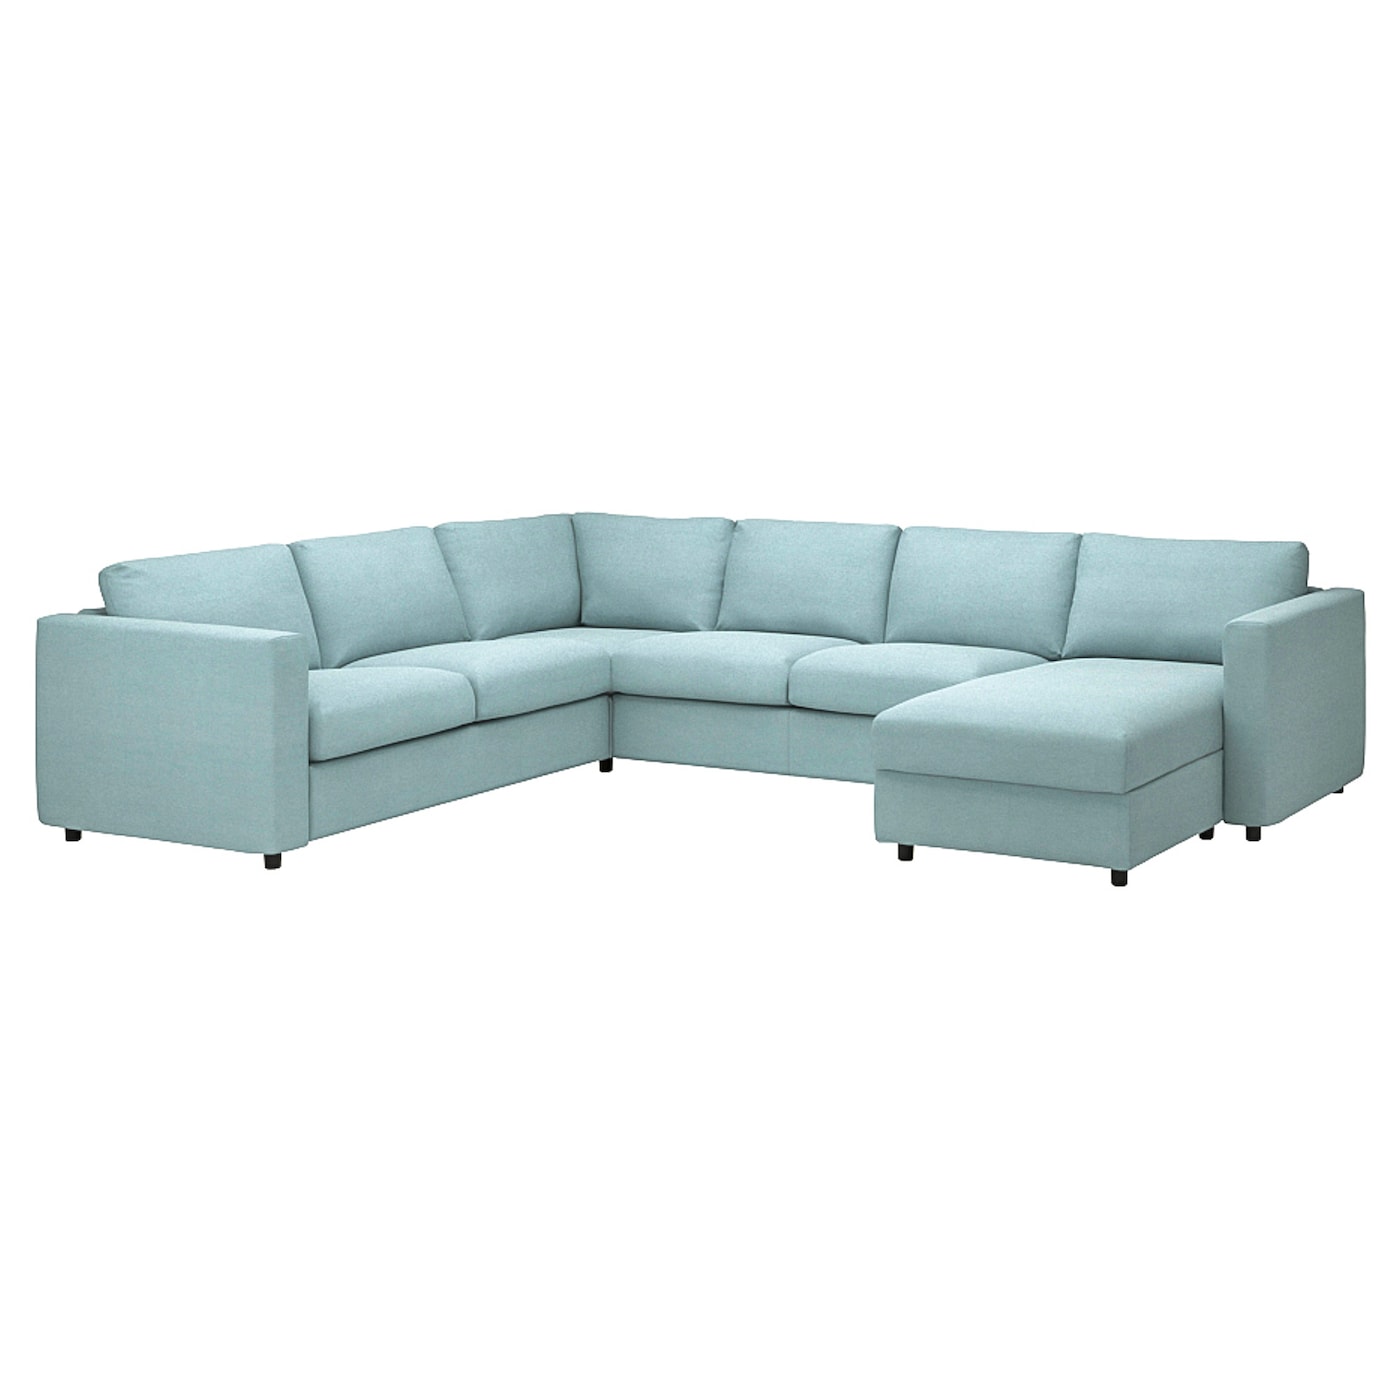 ВИМЛЕ Диван угловой, 5-местный. диван+диван, с диваном/Saxemara светло-синий VIMLE IKEA диван угловой диван ру ройн мини velvet smoke